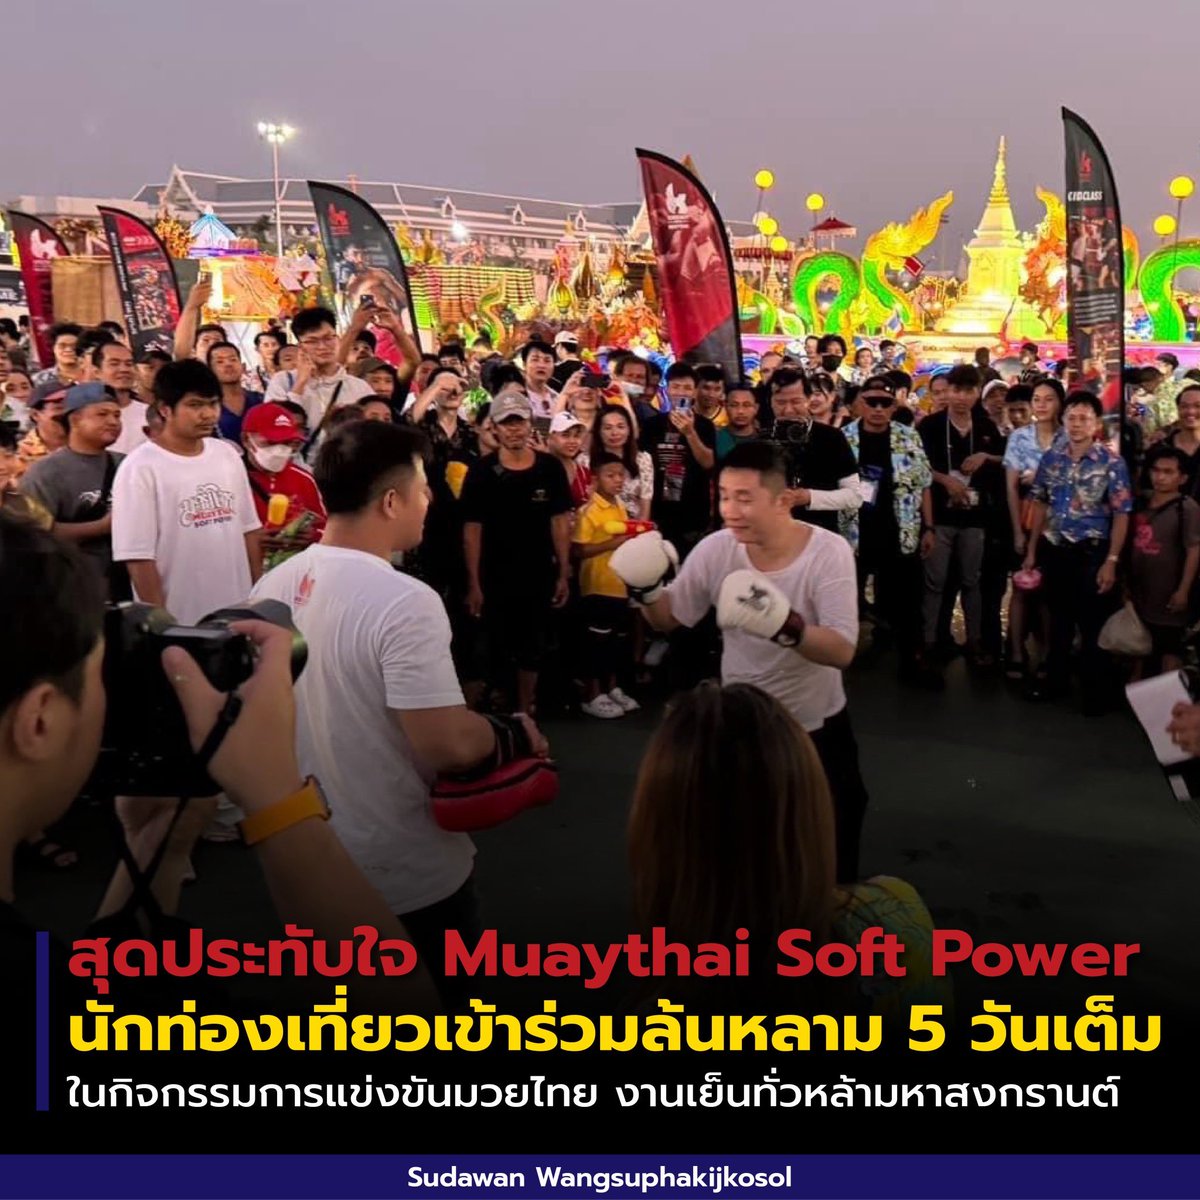 Muaythai Soft Power นักท่องเที่ยวเข้าร่วมกิจกรรมล้นหลาม 5 วันเต็ม กับการแข่งขันมวยไทยในงานเย็นทั่วหล้ามหาสงกรานต์ 2567 ณ ท้องสนามหลวง ในวันที่ 11 - 15 เม.ย. 67 ที่ผ่านมา

โดยแต่ละวันมีจำนวนผู้เข้าร่วมงานกว่า 100,000-170,000 คน

#รมว #รมวปุ๋ง #ท่องเที่ยวและกีฬา
#มวยไทย #สงกรานต์